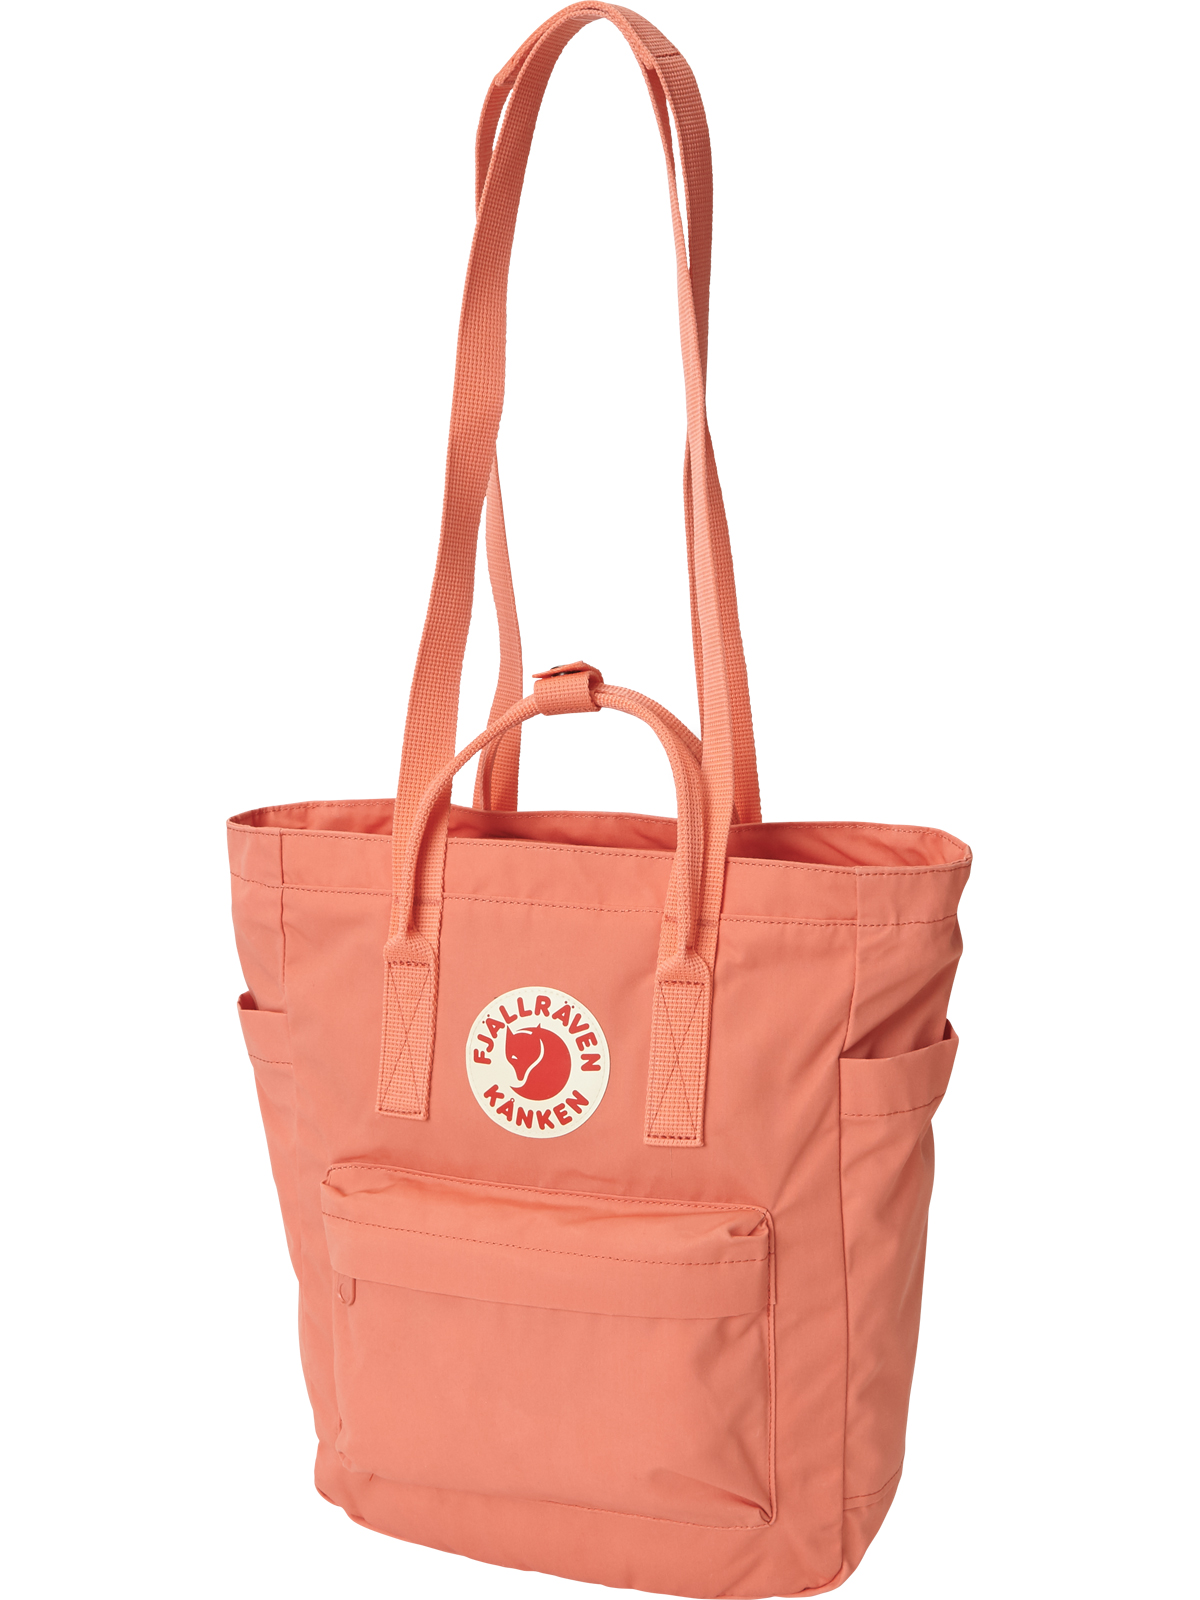 Fjallraven Kanken Mini Backpack Gray Purse/Bag | eBay